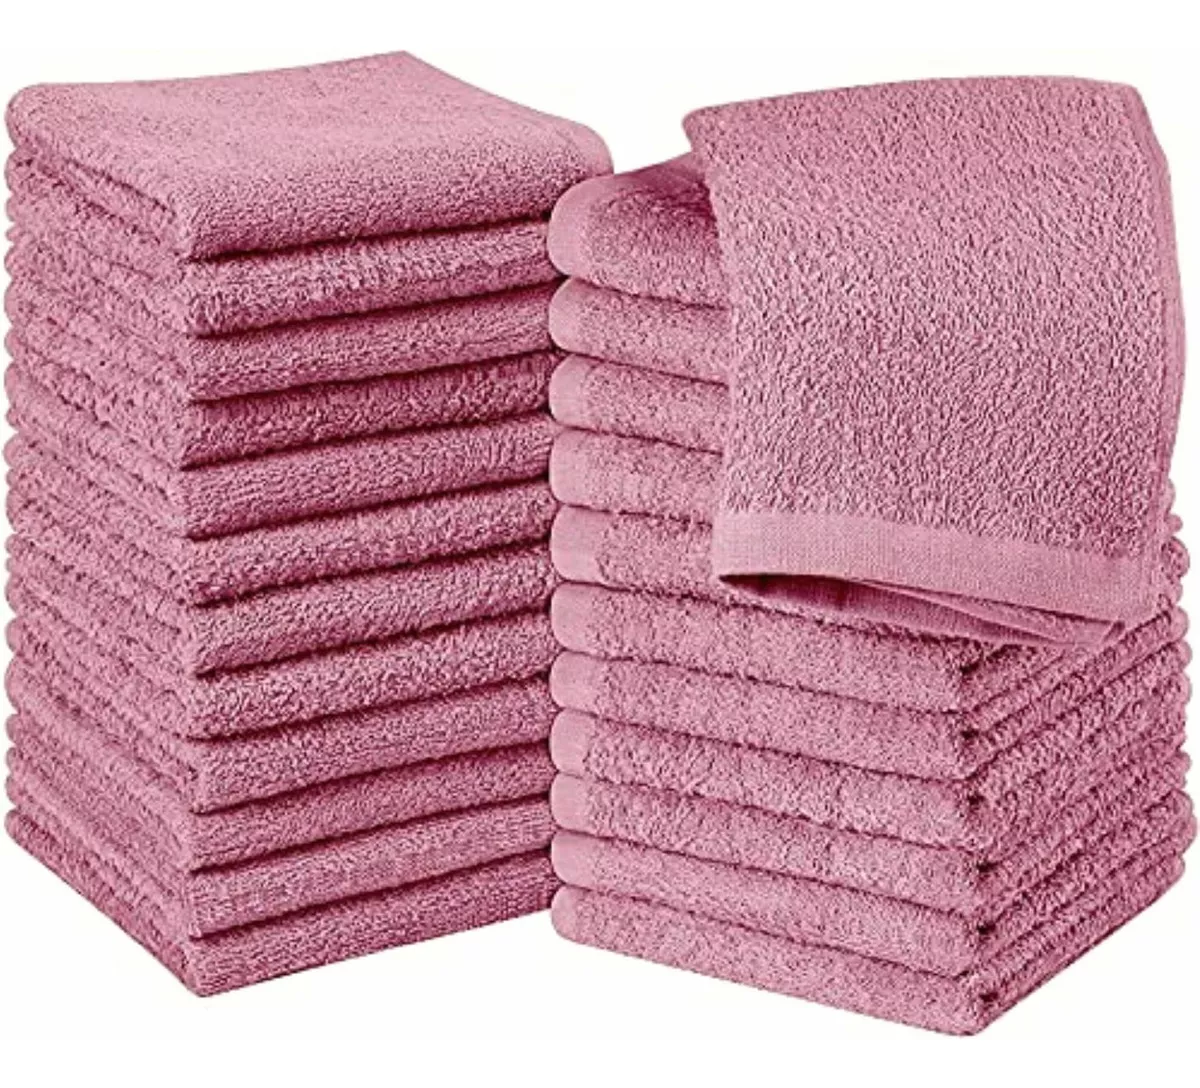 Tercera imagen para búsqueda de toallas de mano rosa